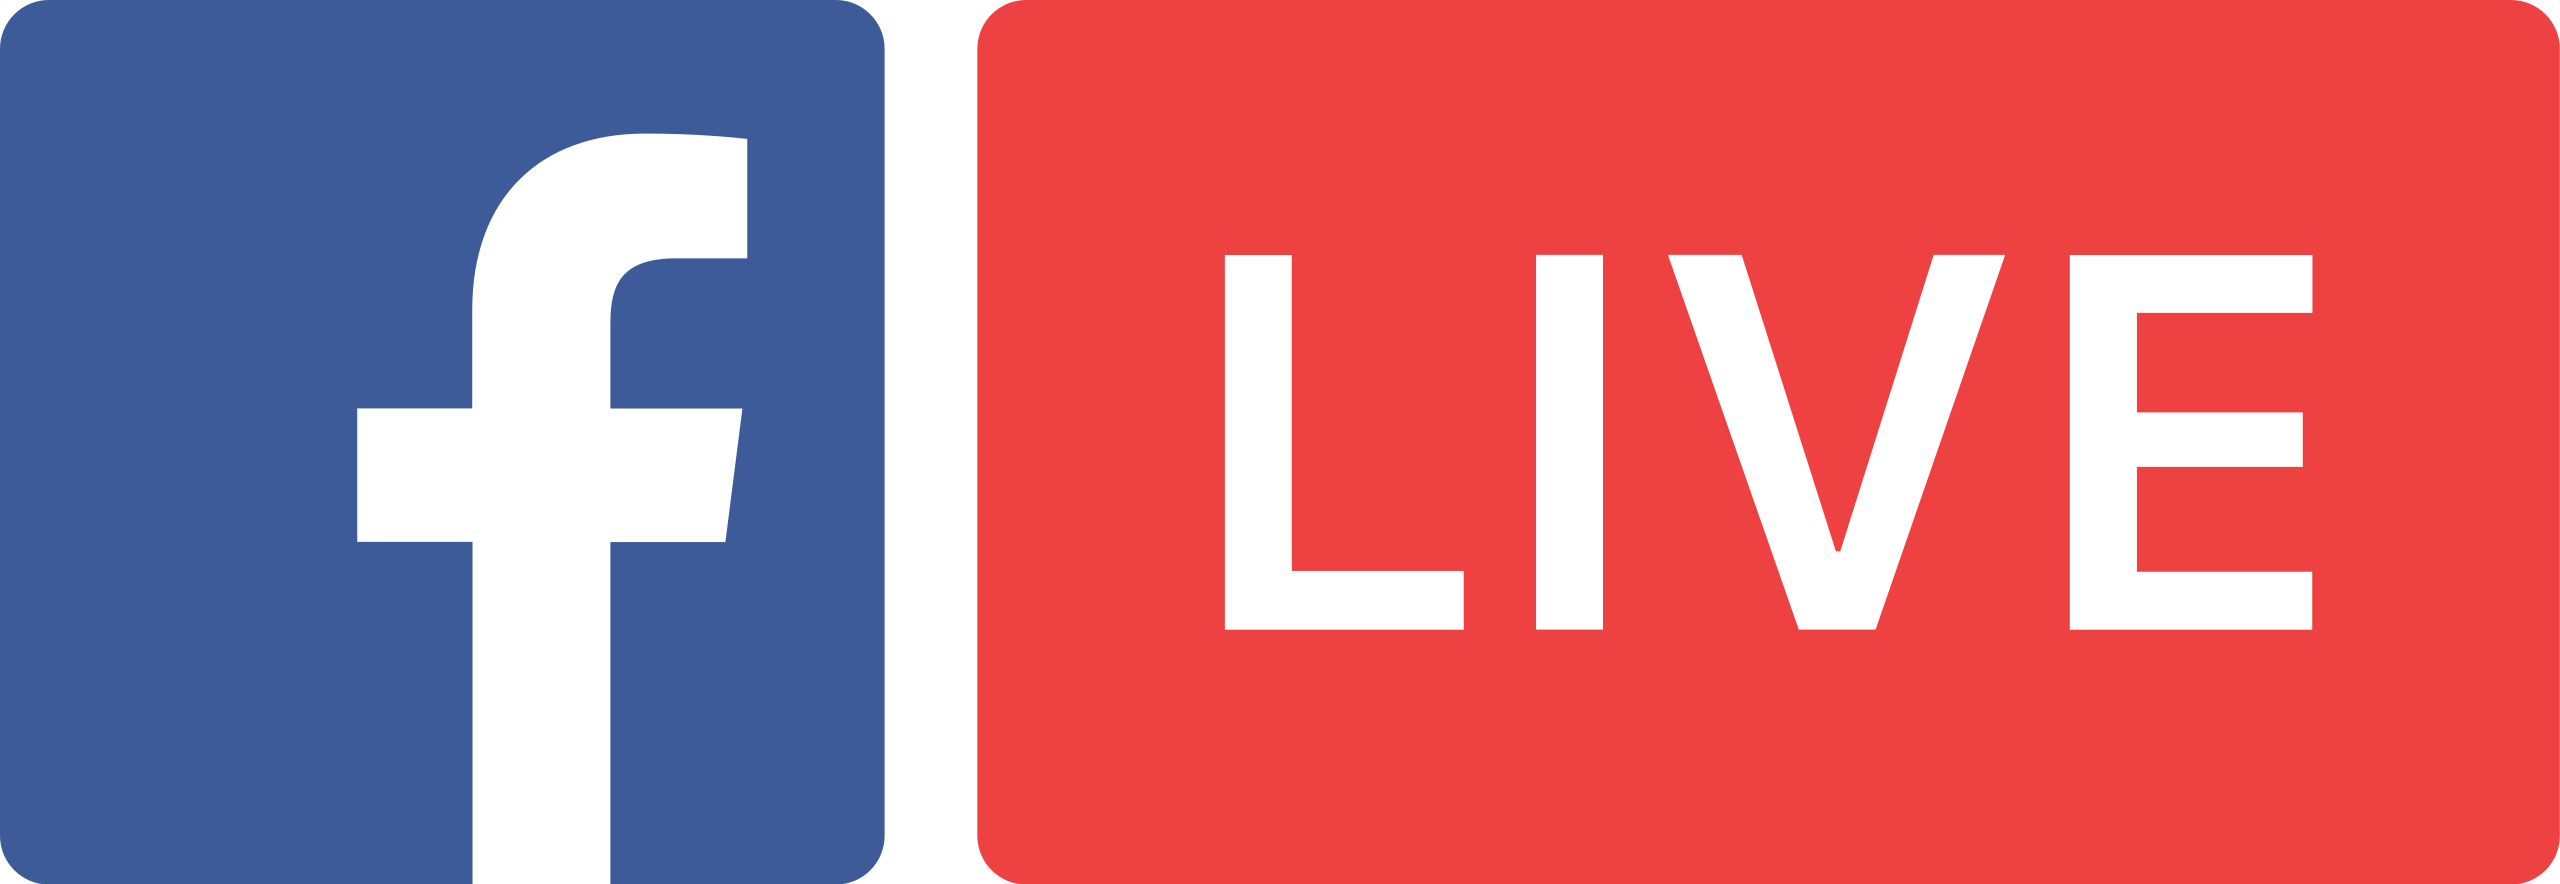 facebook live stream logo